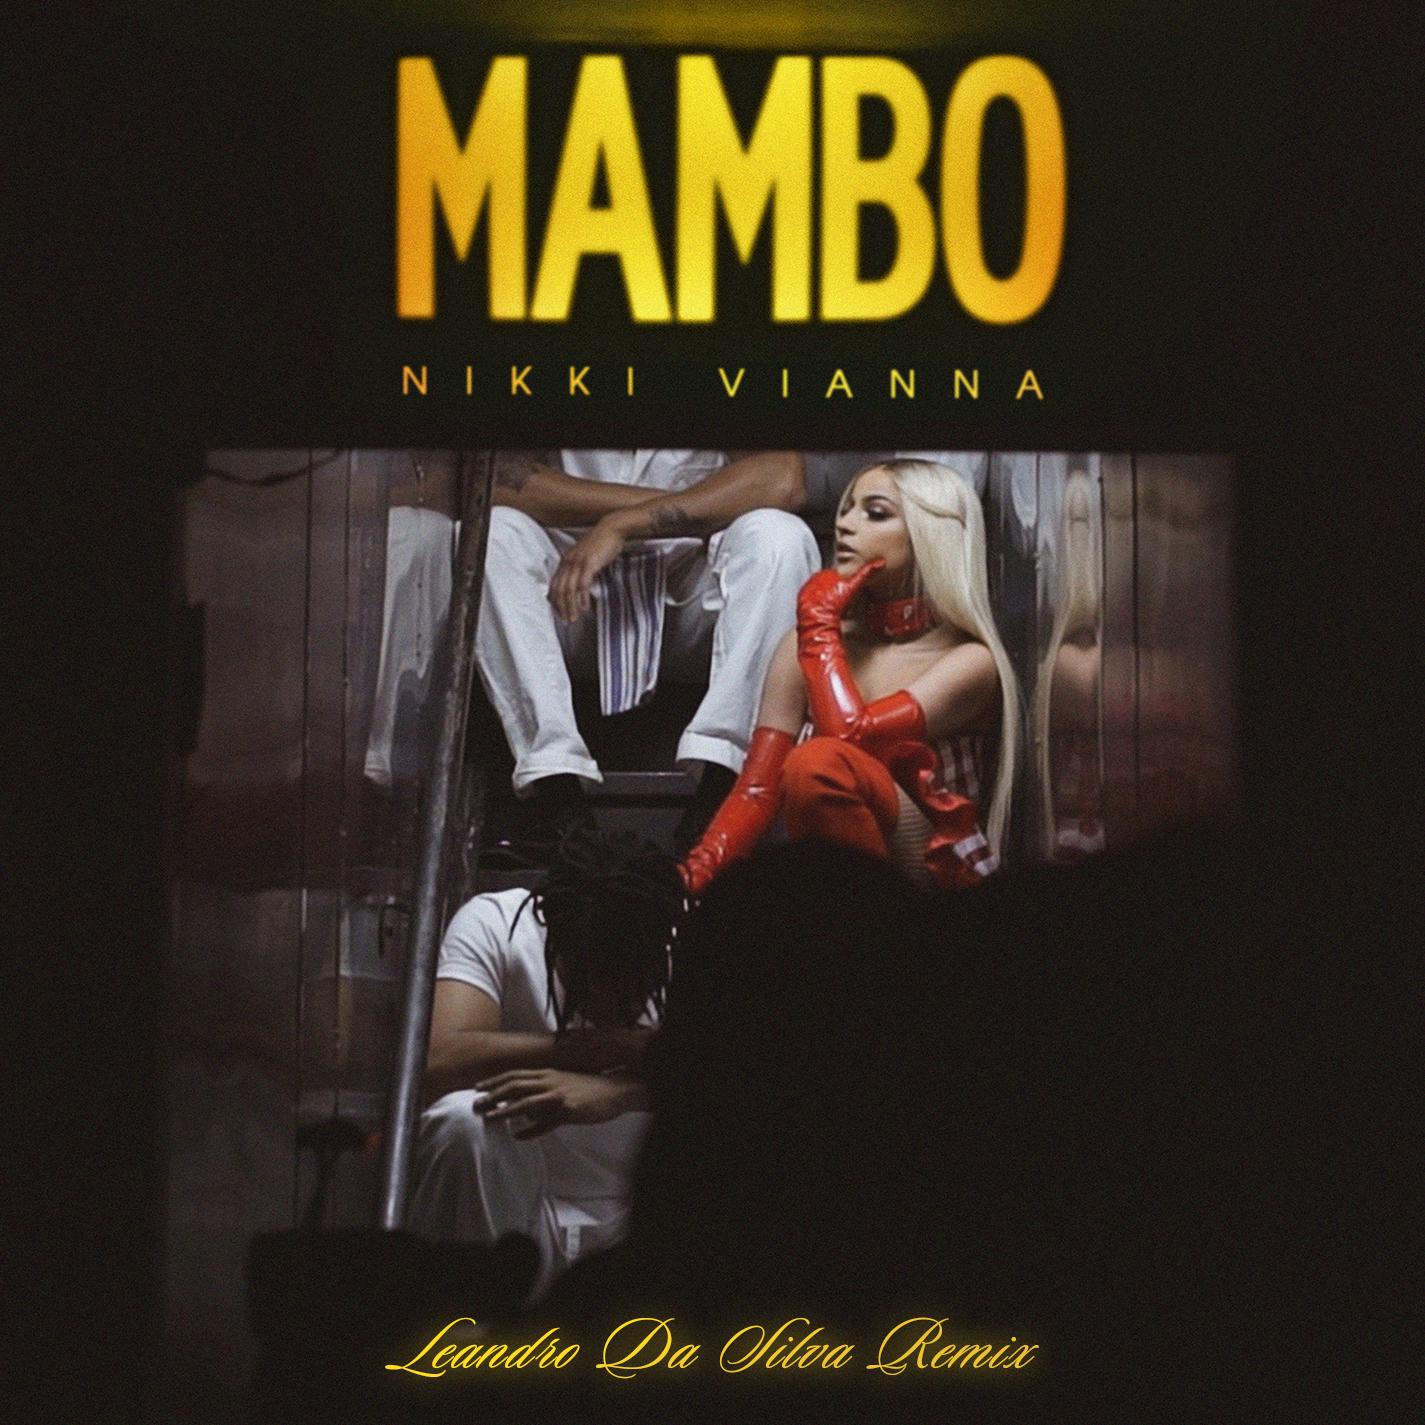 Mambo (Leandro Da Silva Remix)歌词 歌手Nikki Vianna-专辑Mambo (Leandro Da Silva Remix)-单曲《Mambo (Leandro Da Silva Remix)》LRC歌词下载